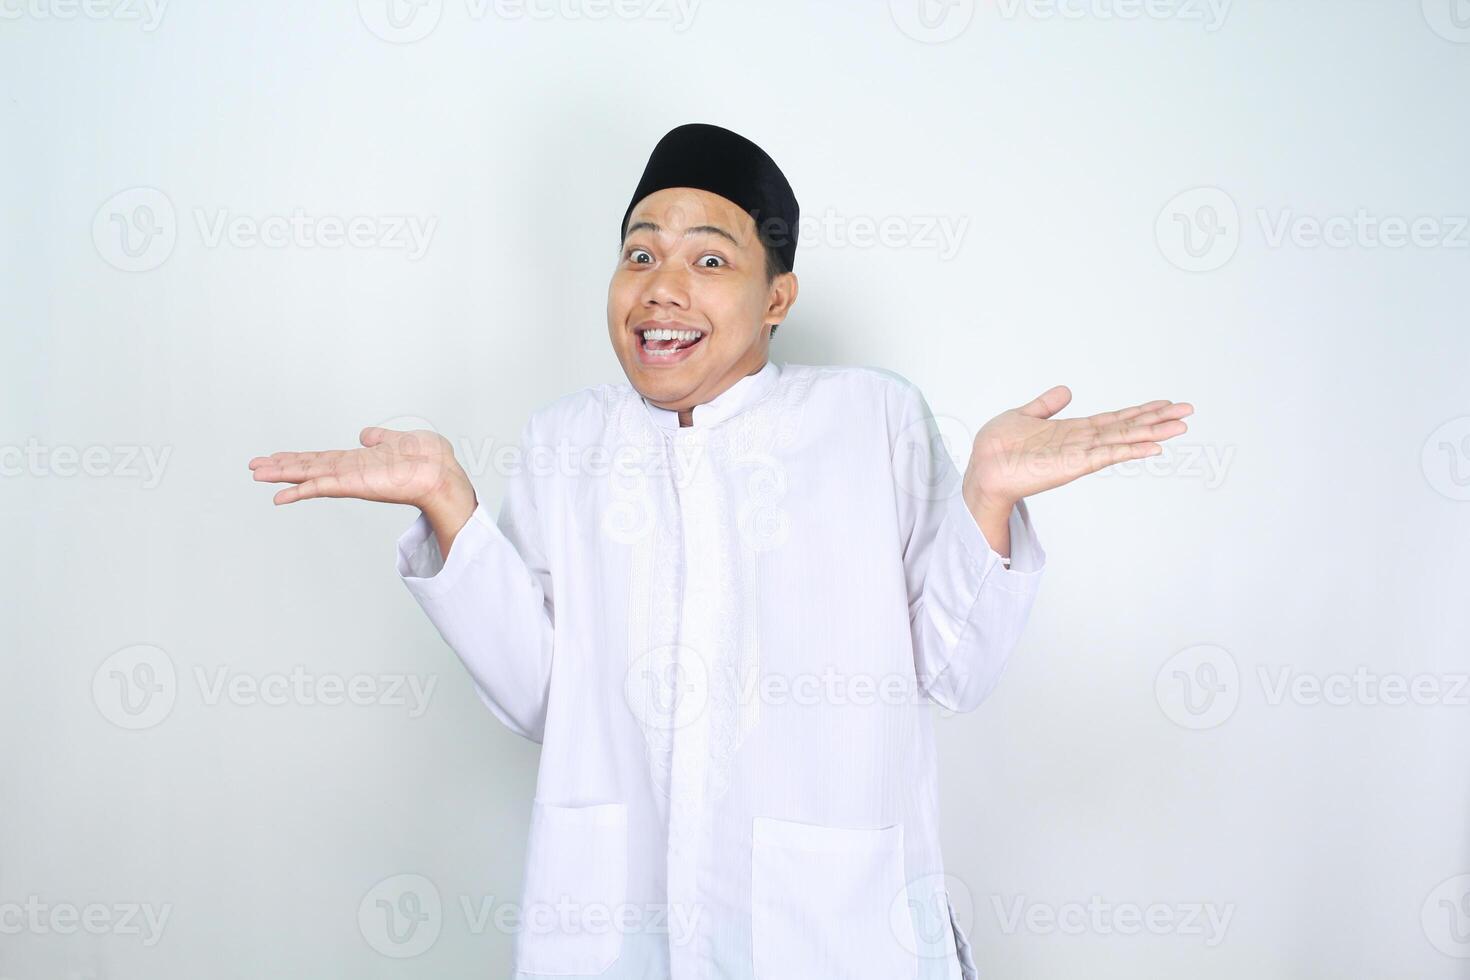 rolig asiatisk muslim man Framställ do inte känna till gest med överraskad ansikte uttryck isolerat på vit bakgrund foto